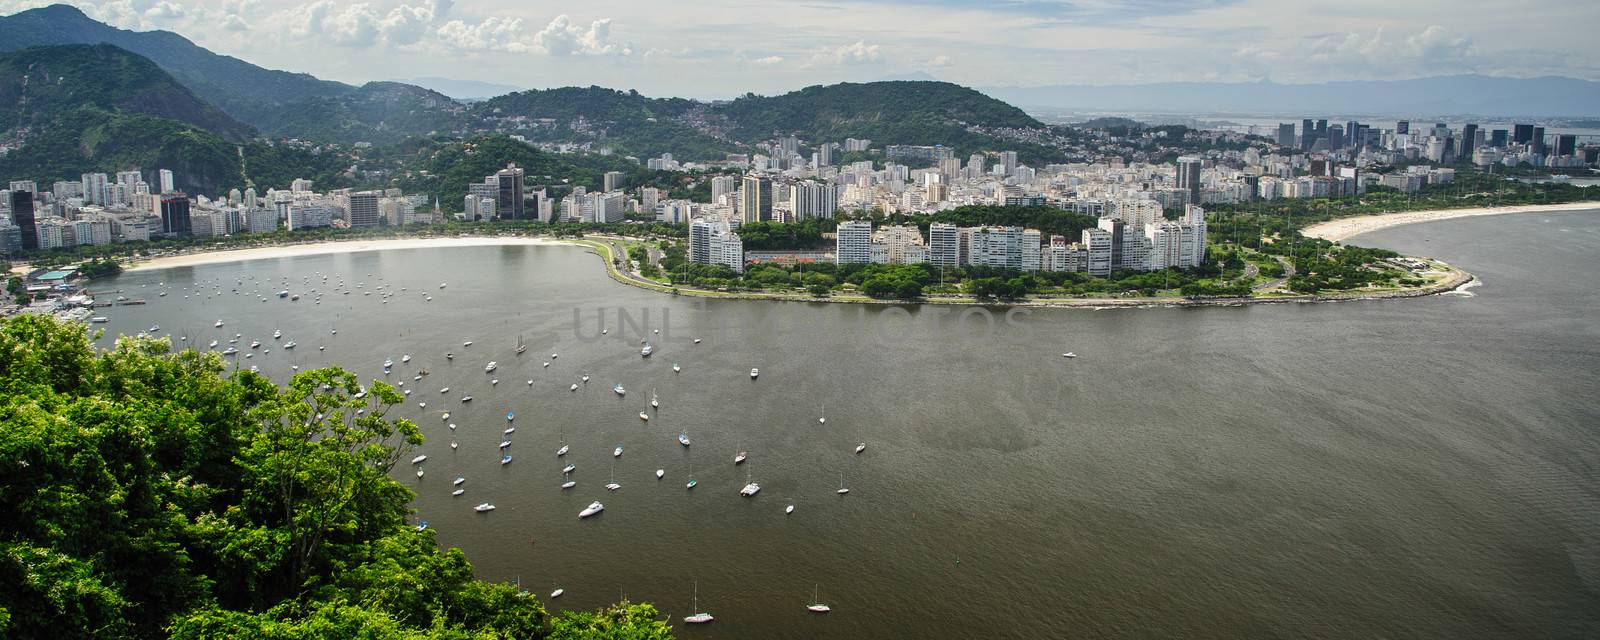 Rio de Janeiro coastline by CelsoDiniz